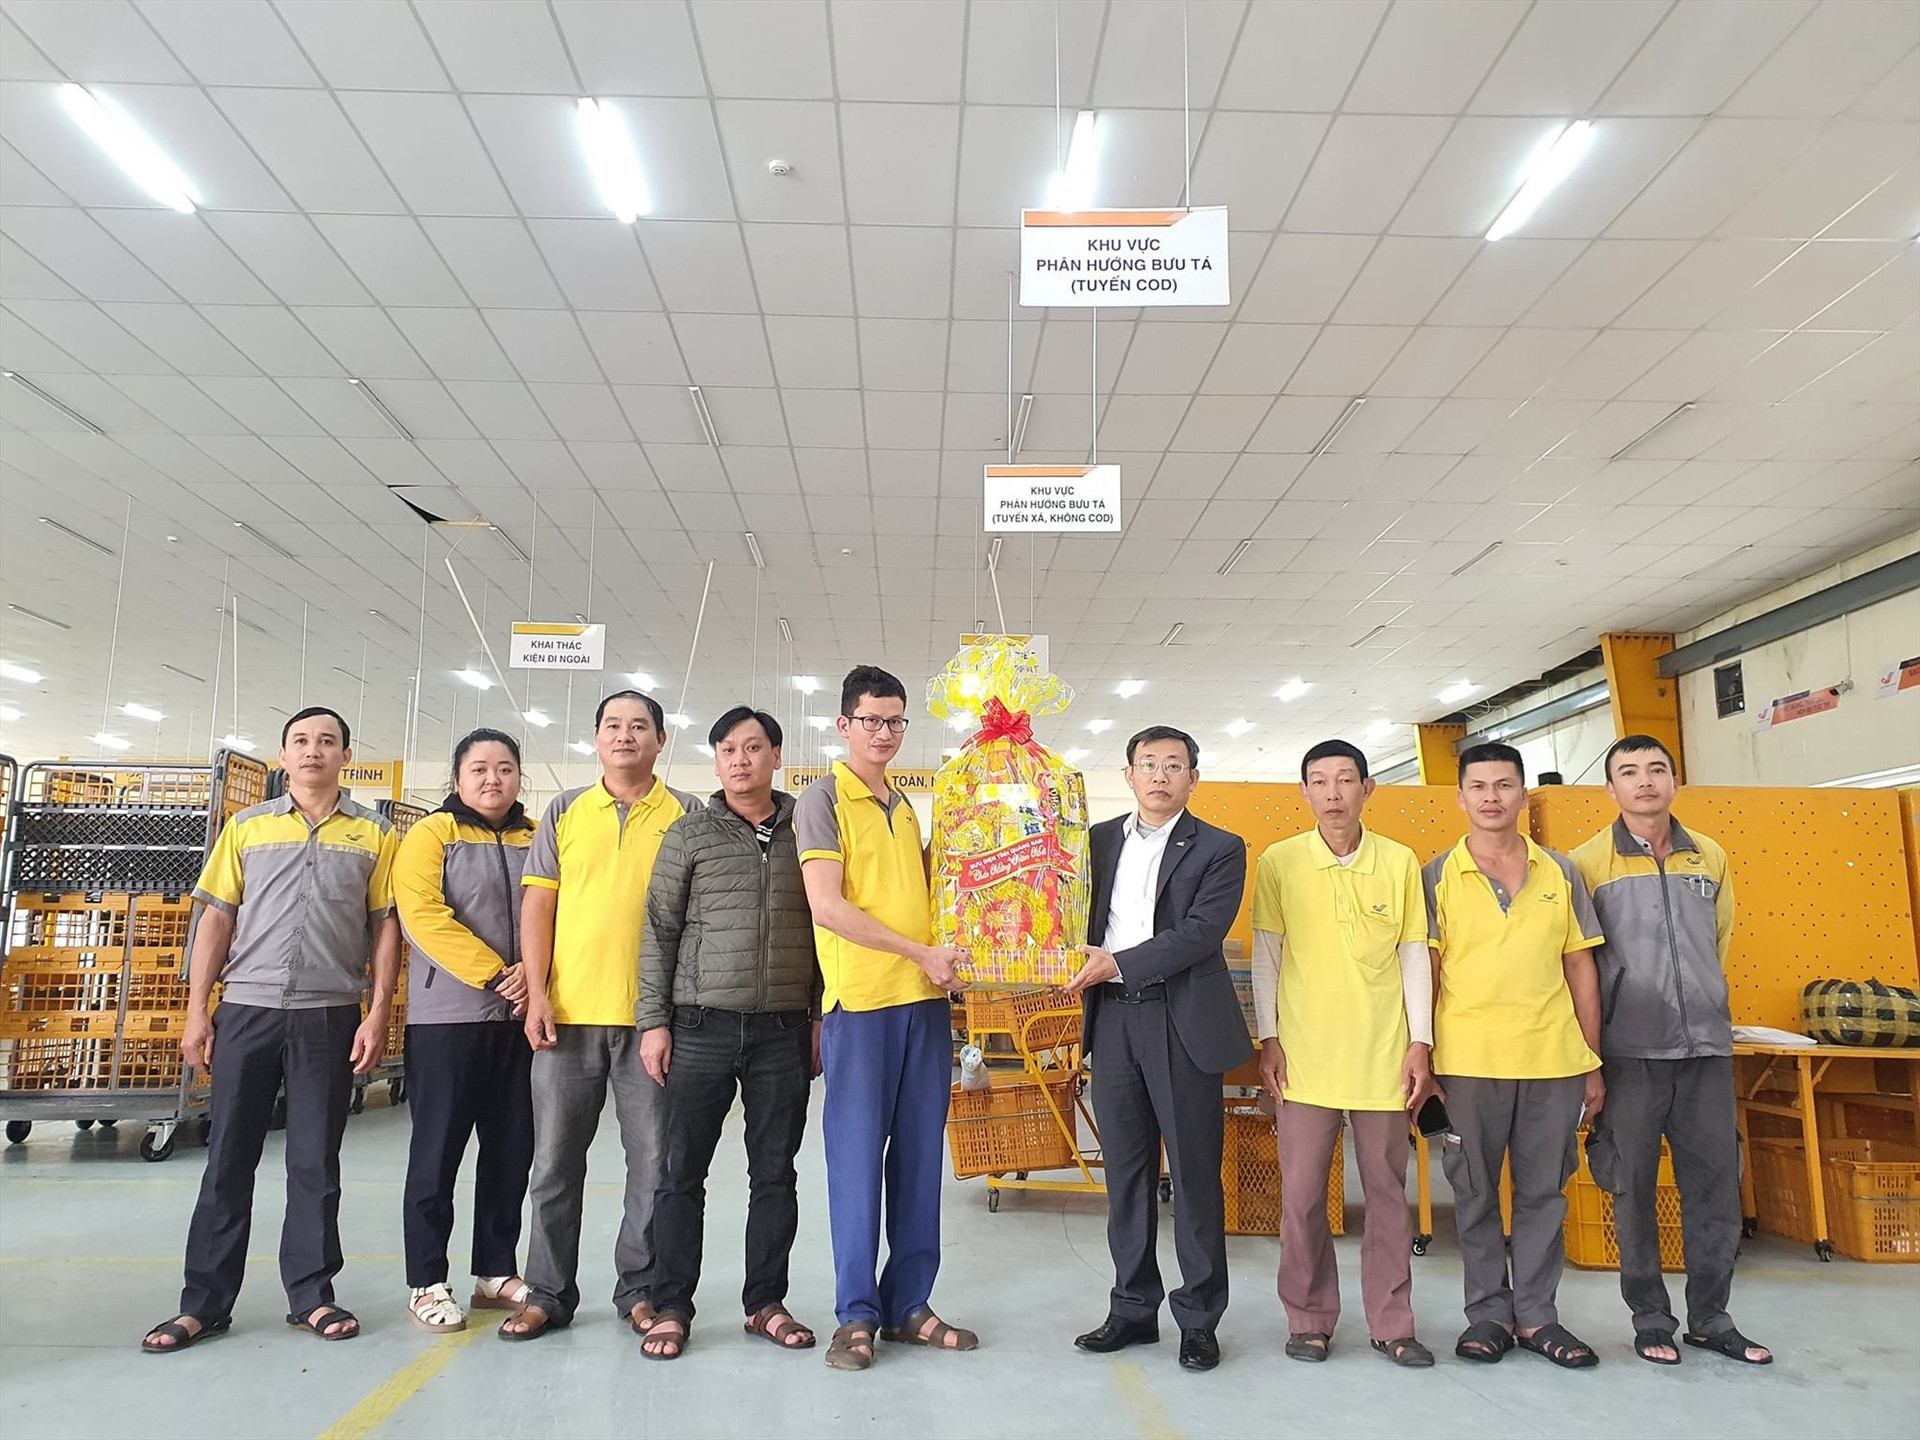 Lãnh đạo Bưu điện tỉnh Quảng Nam thăm hỏi, tặng quà cho cán bộ, nhân viên, người lao động của Trung tâm Khai thác vận chuyển. Ảnh: B.Đ.Q.N